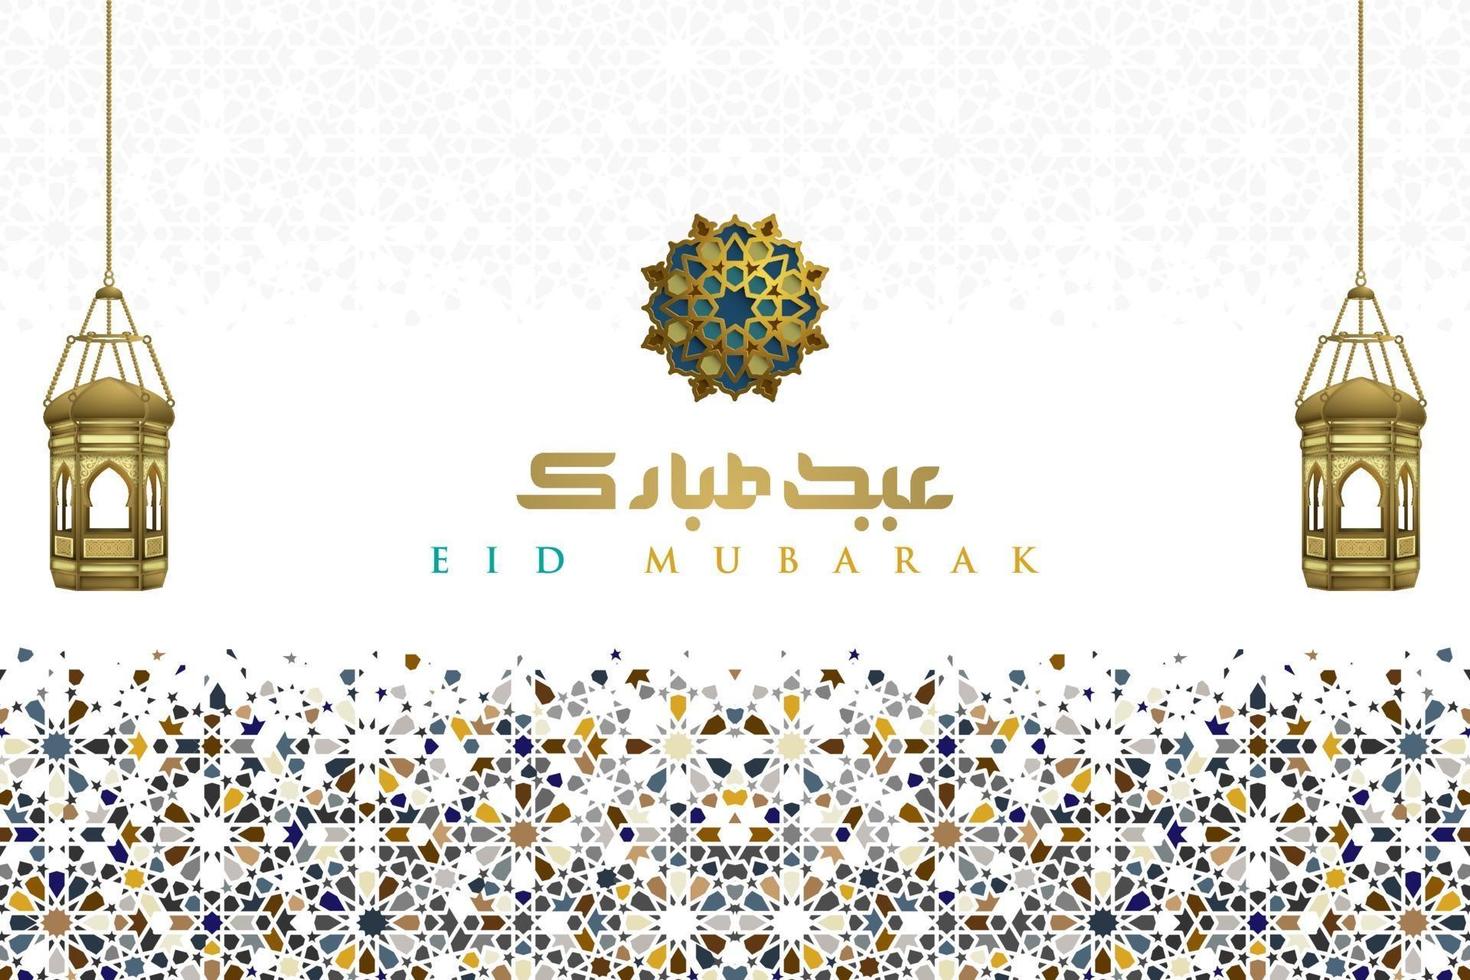 eid mubarak saluto sfondo disegno vettoriale modello islamico con lanterne e bella calligrafia araba. traduzione del testo beato festival